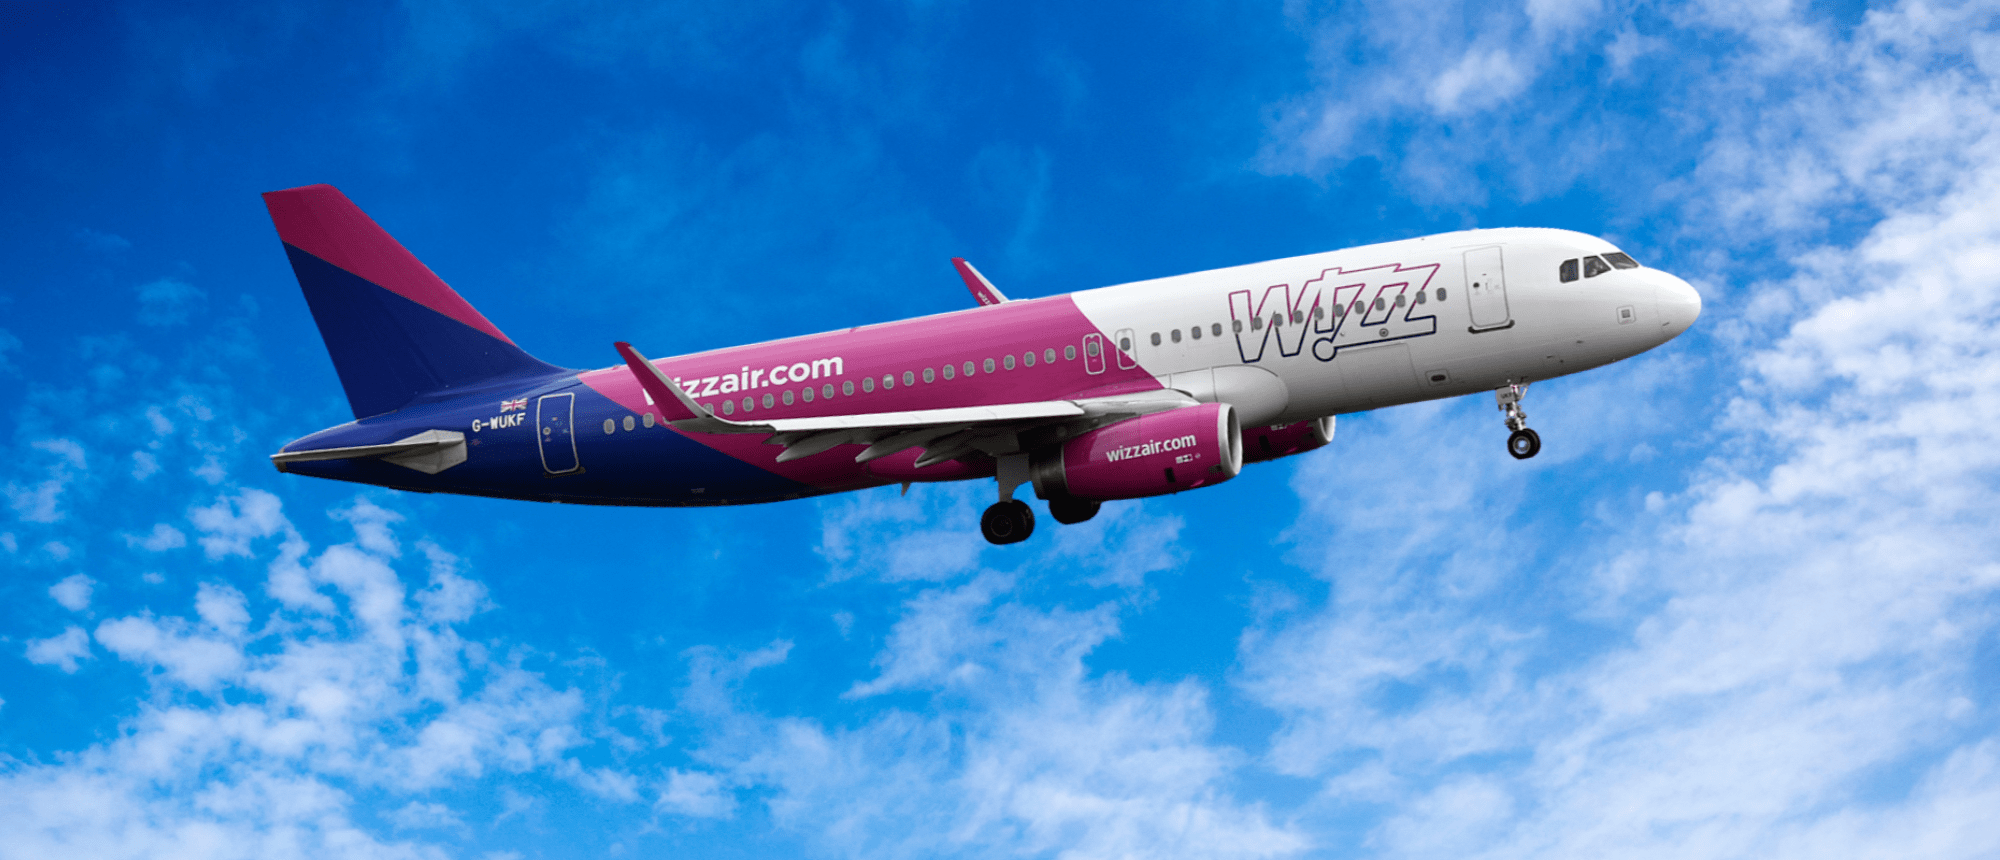 Wizz Air A320 Aircraft